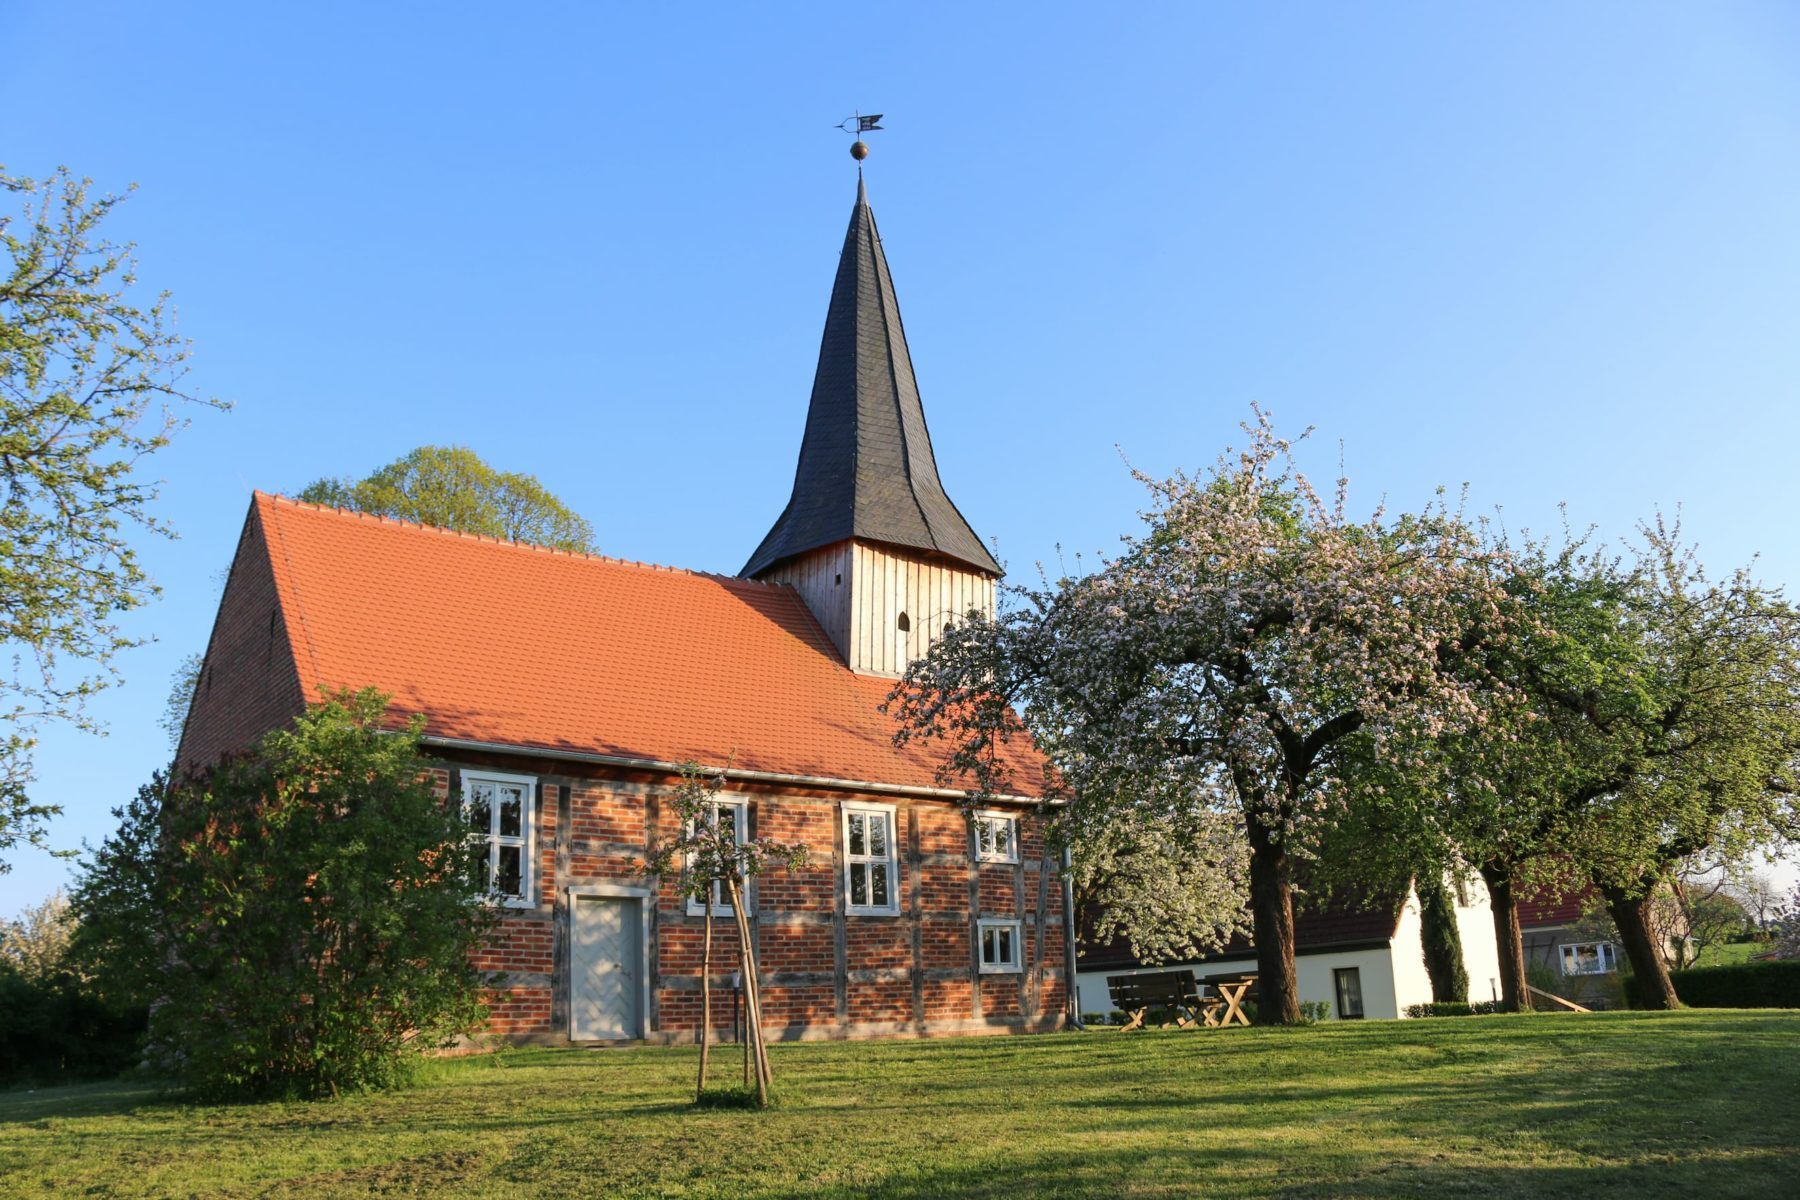 Backsteinkirche mit rotem Ziegeldach und Turm aus Holz, davor eine Wiese mit blühenden Obstbäumen